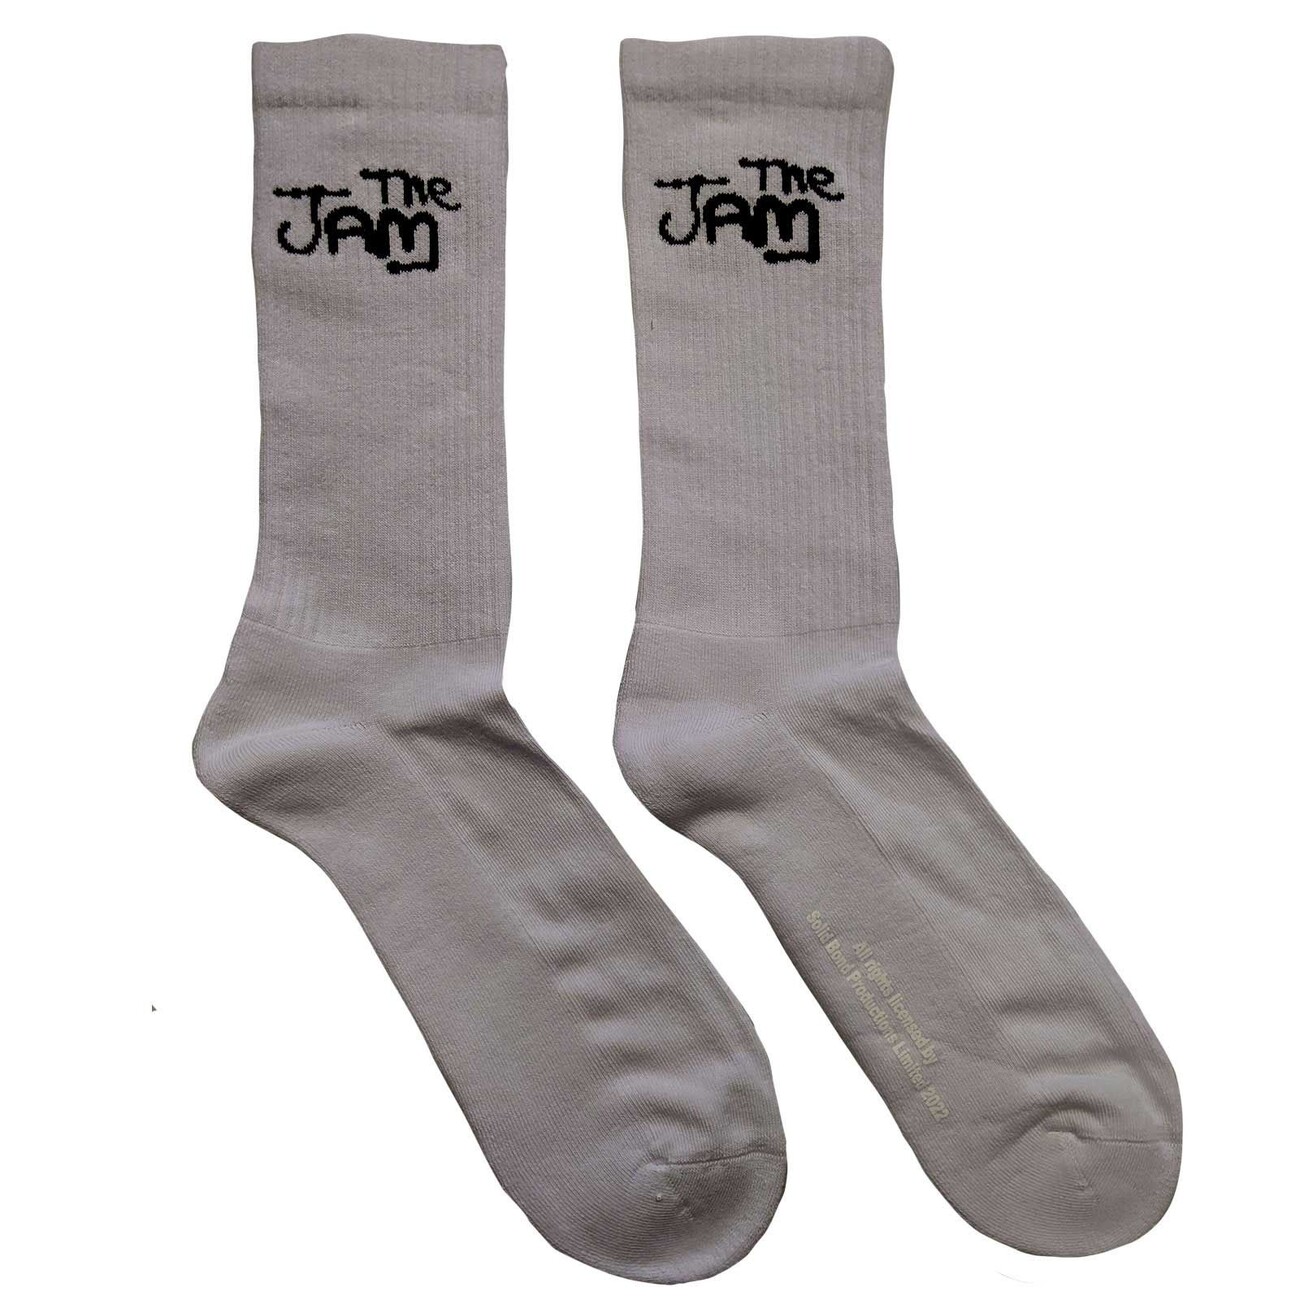 Overvind Den sandsynlige Almindeligt Socks The Jam - Logo | Clothes and accessories for merchandise fans